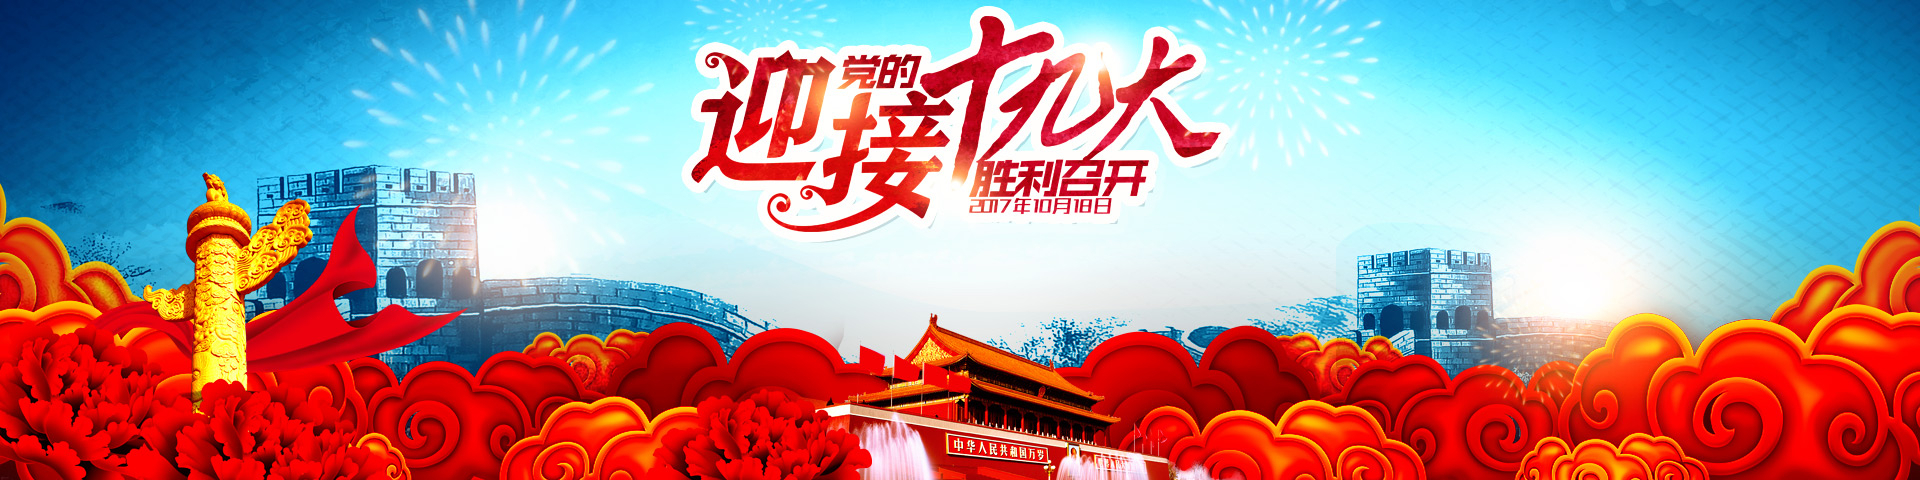 厦门三江盛达热烈庆祝中国共产党第十九次全国代表大会胜利召开